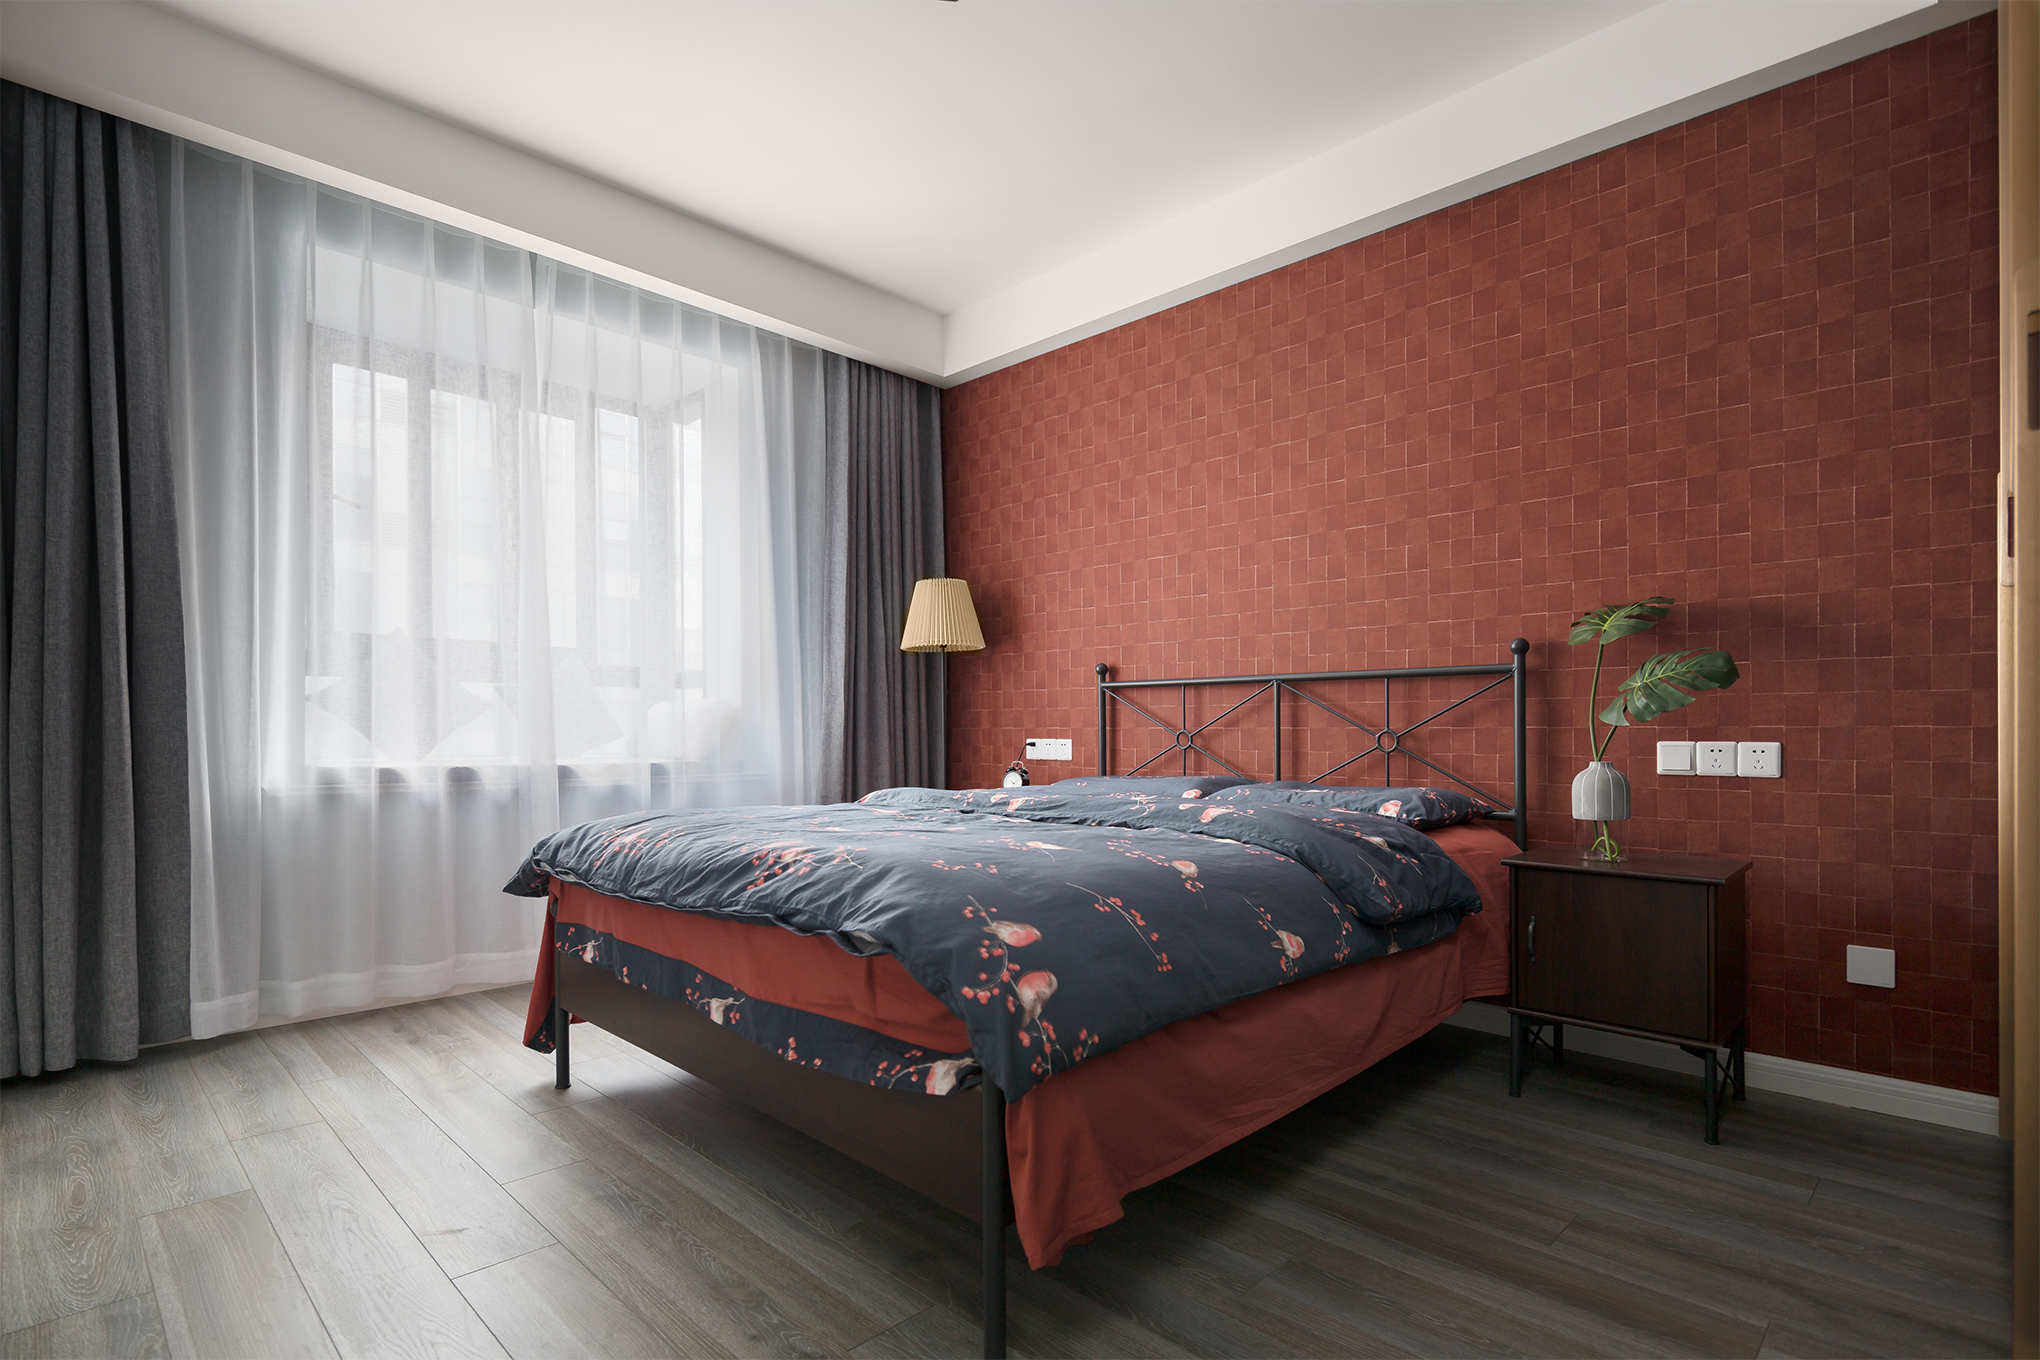 卧室窗帘1装修效果图简致北欧风主卧设计图片北欧风卧室设计图片赏析